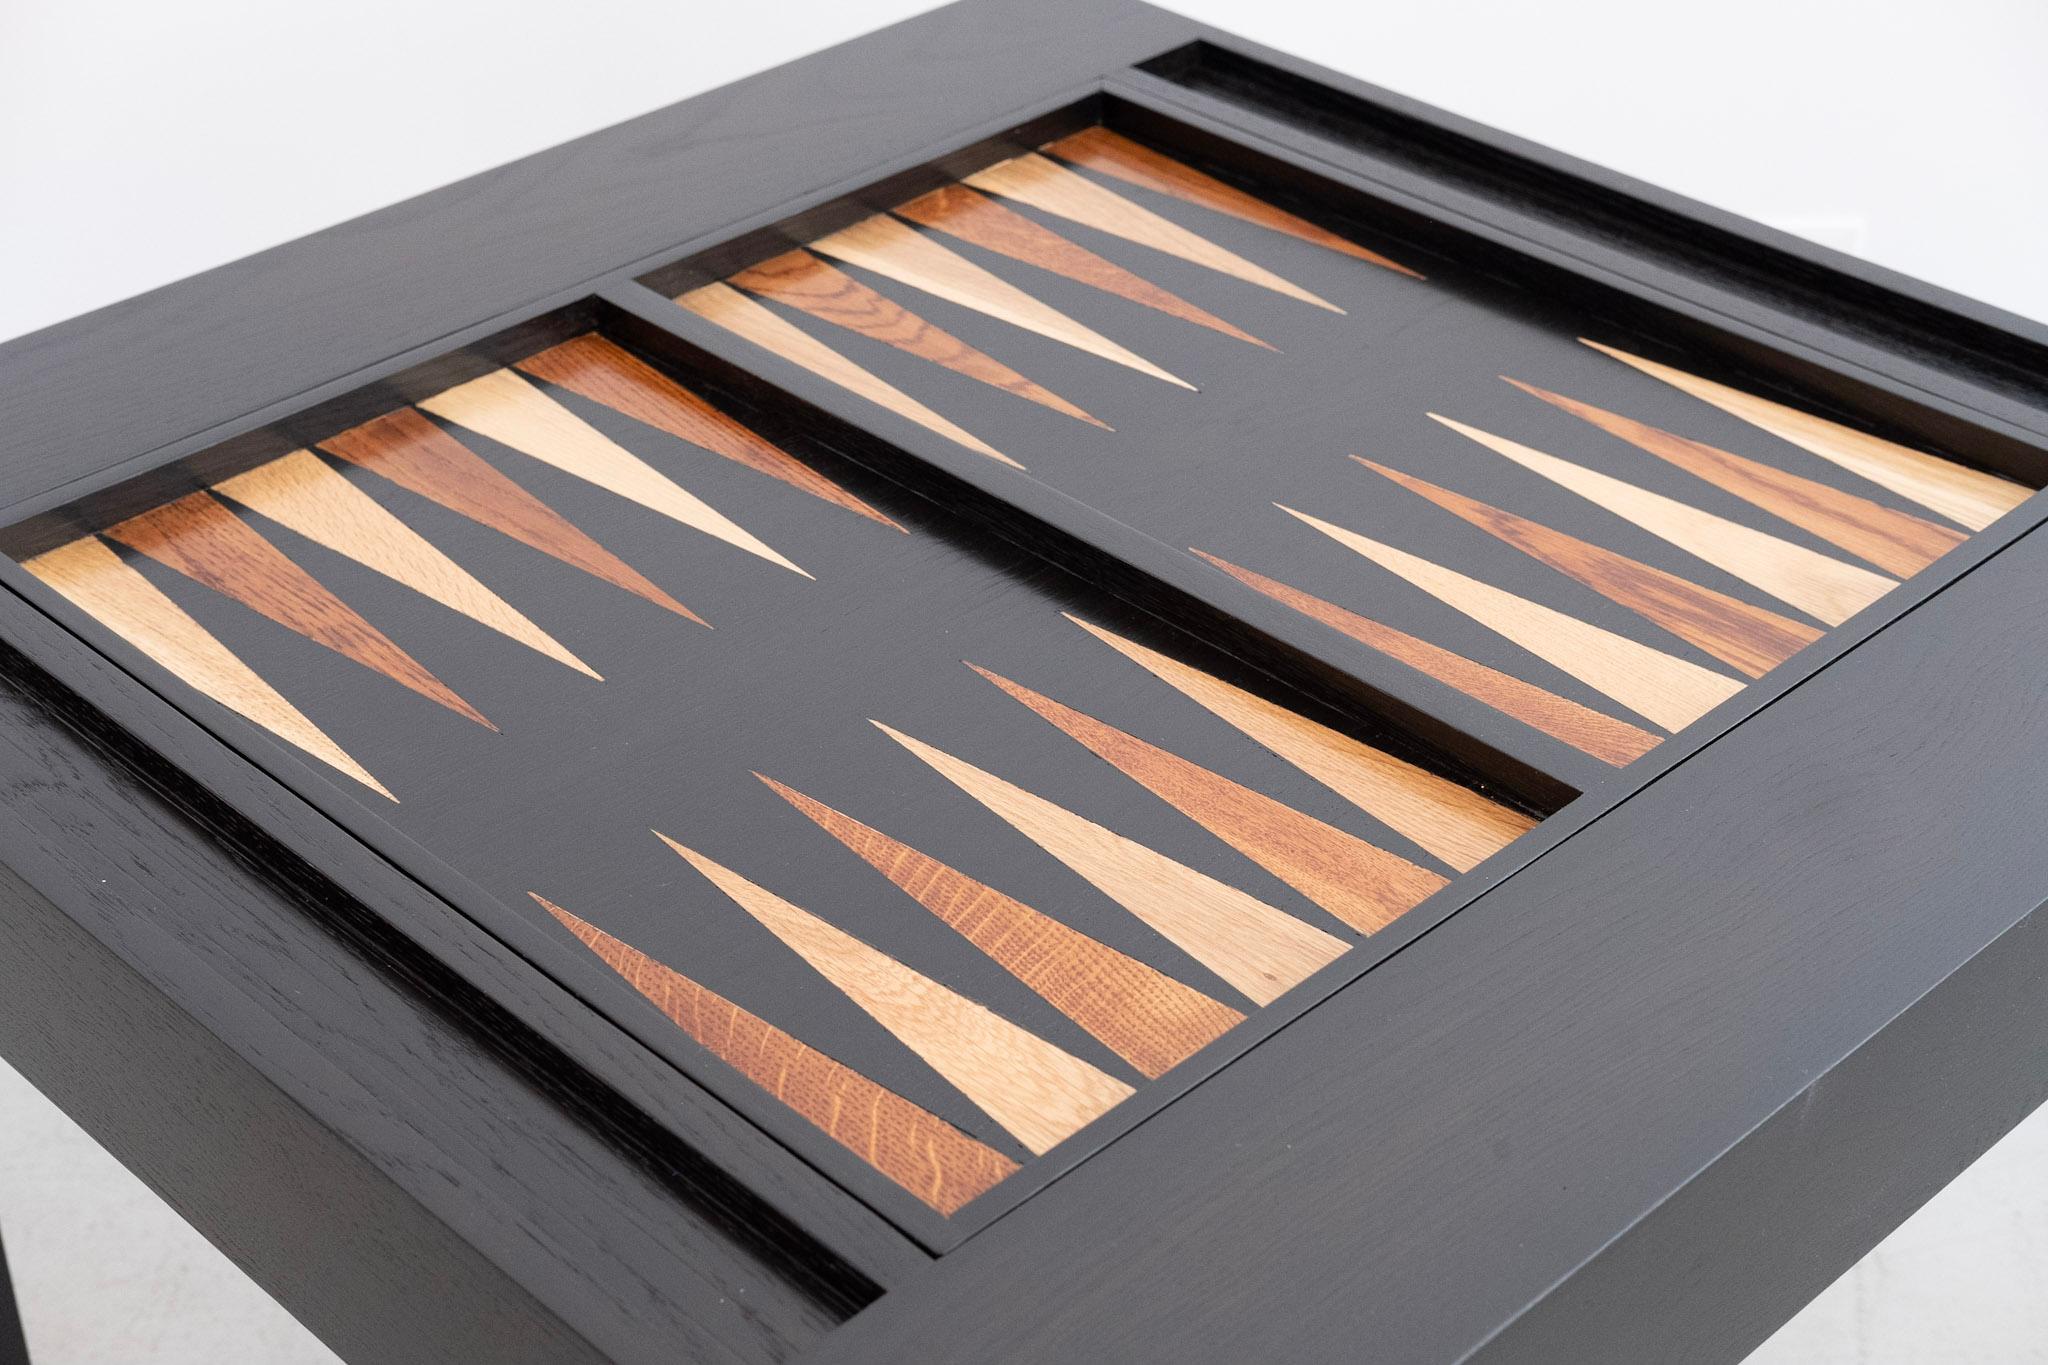 Table de backgammon de style Parson's nouvellement produite en noyer et refinie en ébène. Le plateau de jeu est en bois d'acajou et de hêtre incrusté à la main. La surface de jeu se retourne pour révéler un plateau en noyer massif, parfait pour les